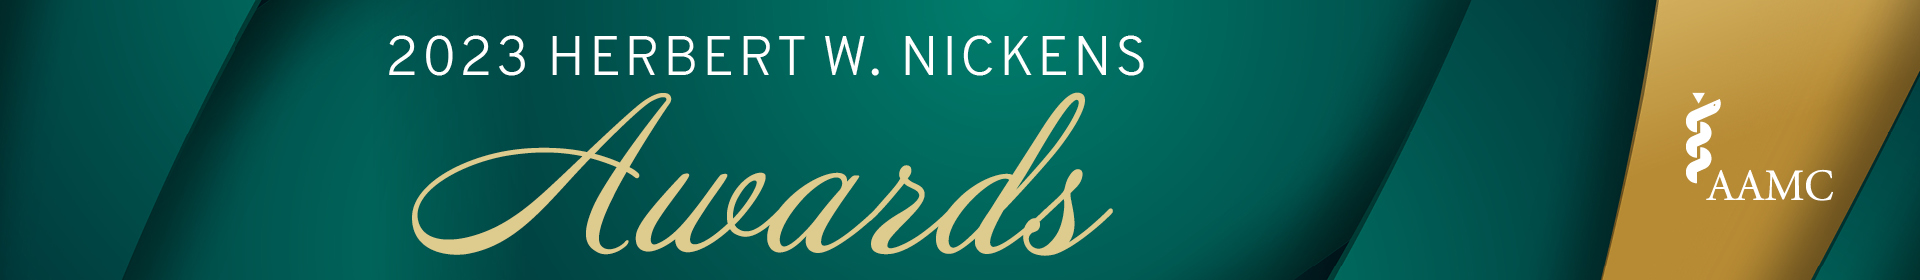 2023 Herbert W. Nickens Award  Event Banner